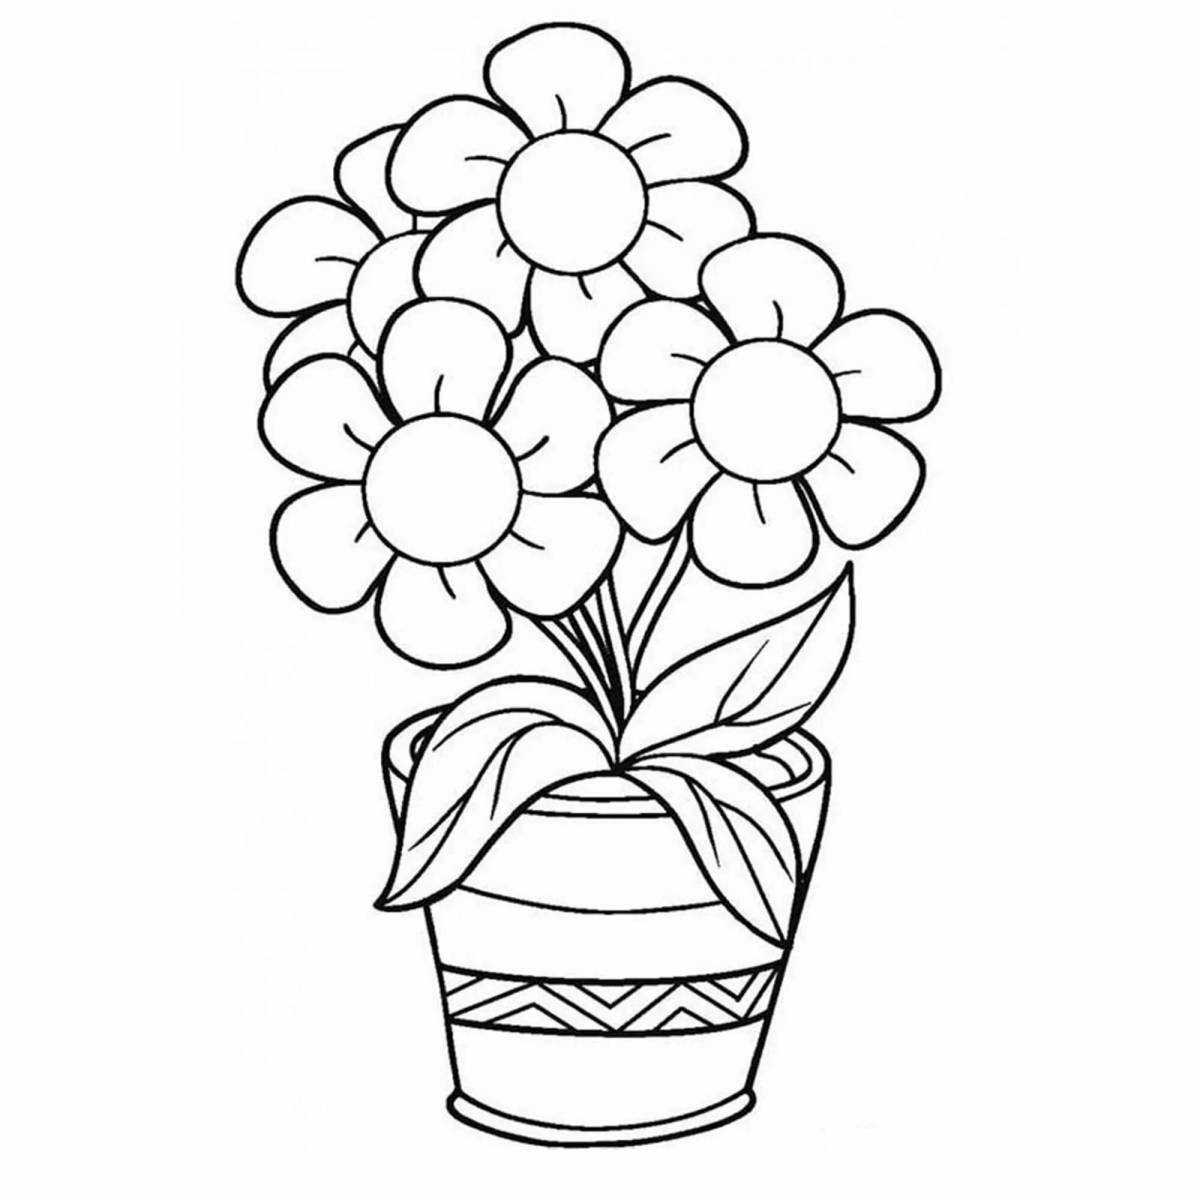 Раскраска Цветы в вазе распечатать или скачать